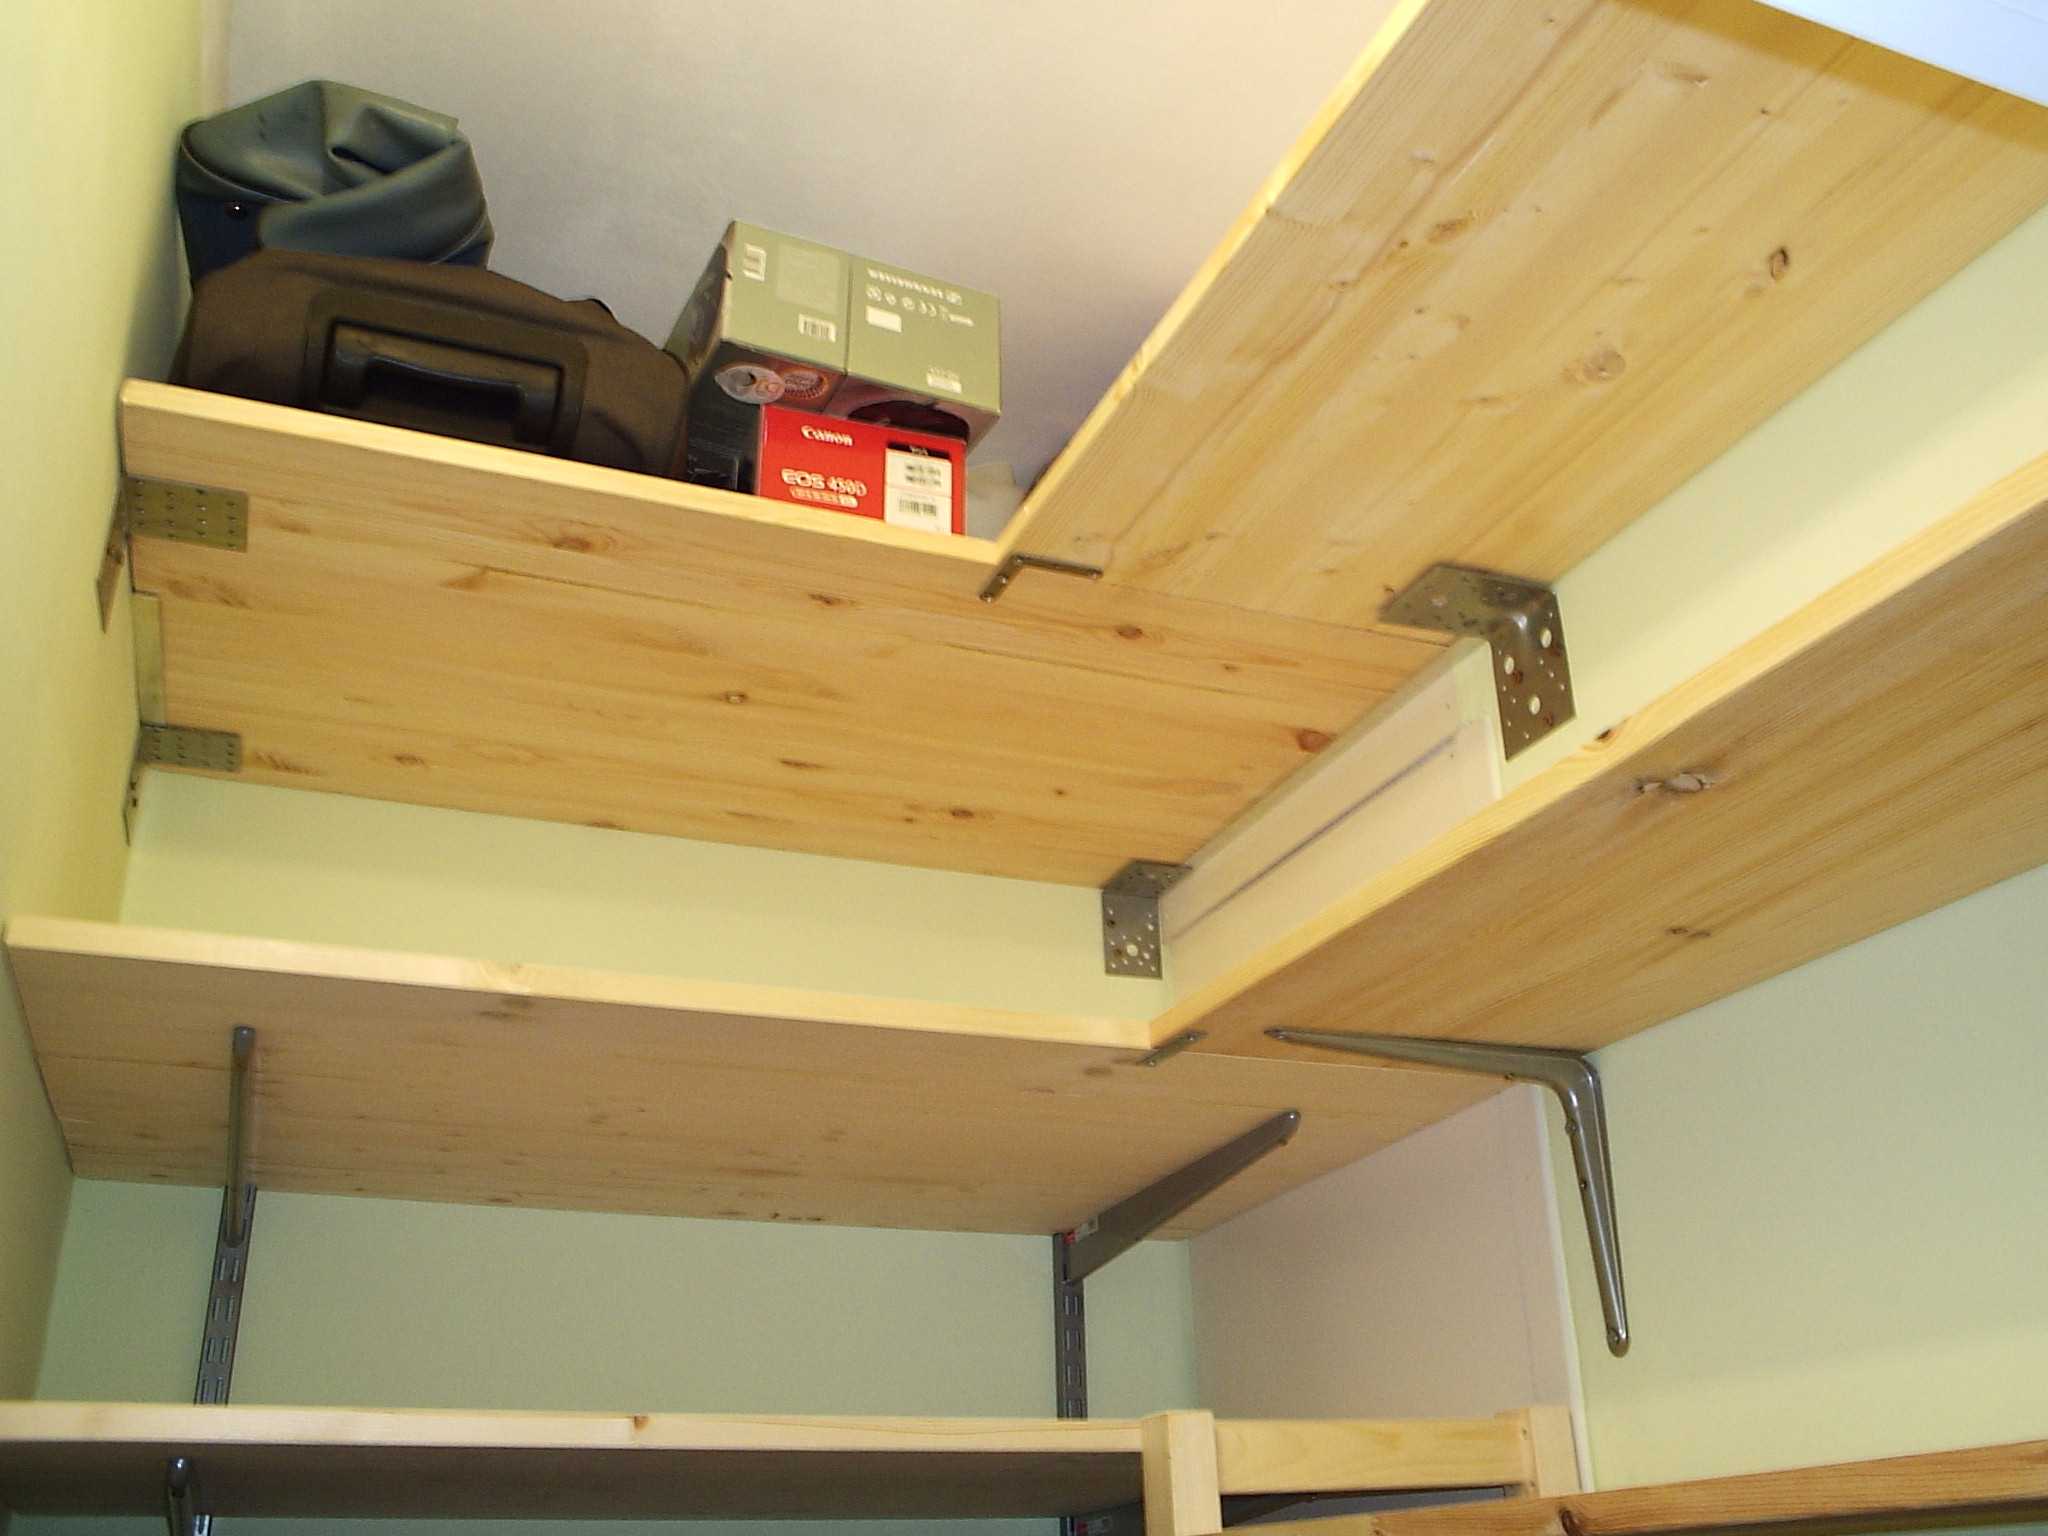 Дизайн маленькой кладовки в квартире (65 фото): как обустроить помещение небольших размеров, обустройство хранения вещей в «хрущевке»